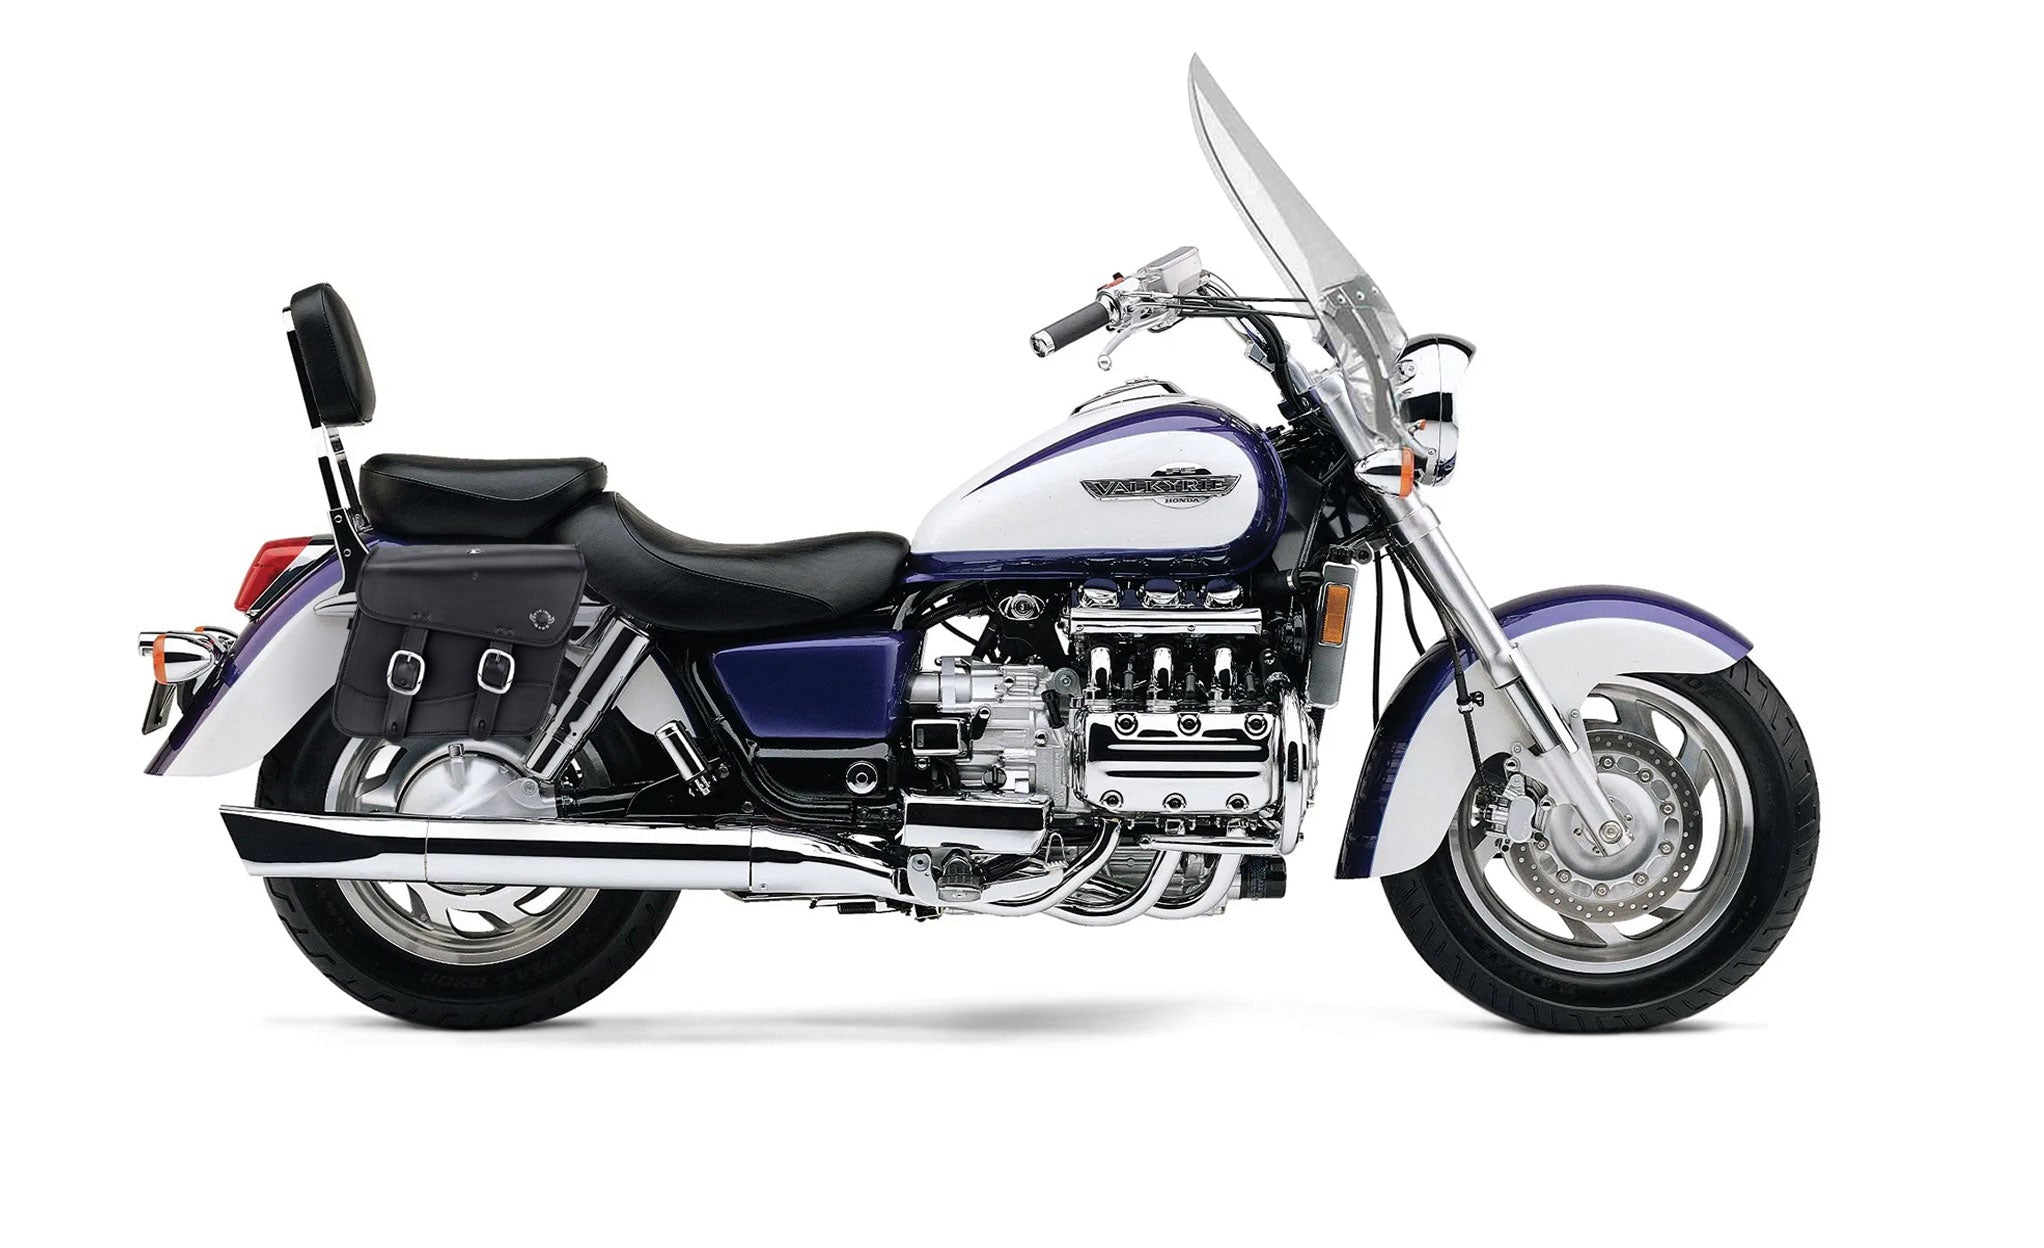 Viking Thor Medium Honda Valkyrie 1500 Tourer Leather Motorcycle Saddlebags on Bike Photo @expand